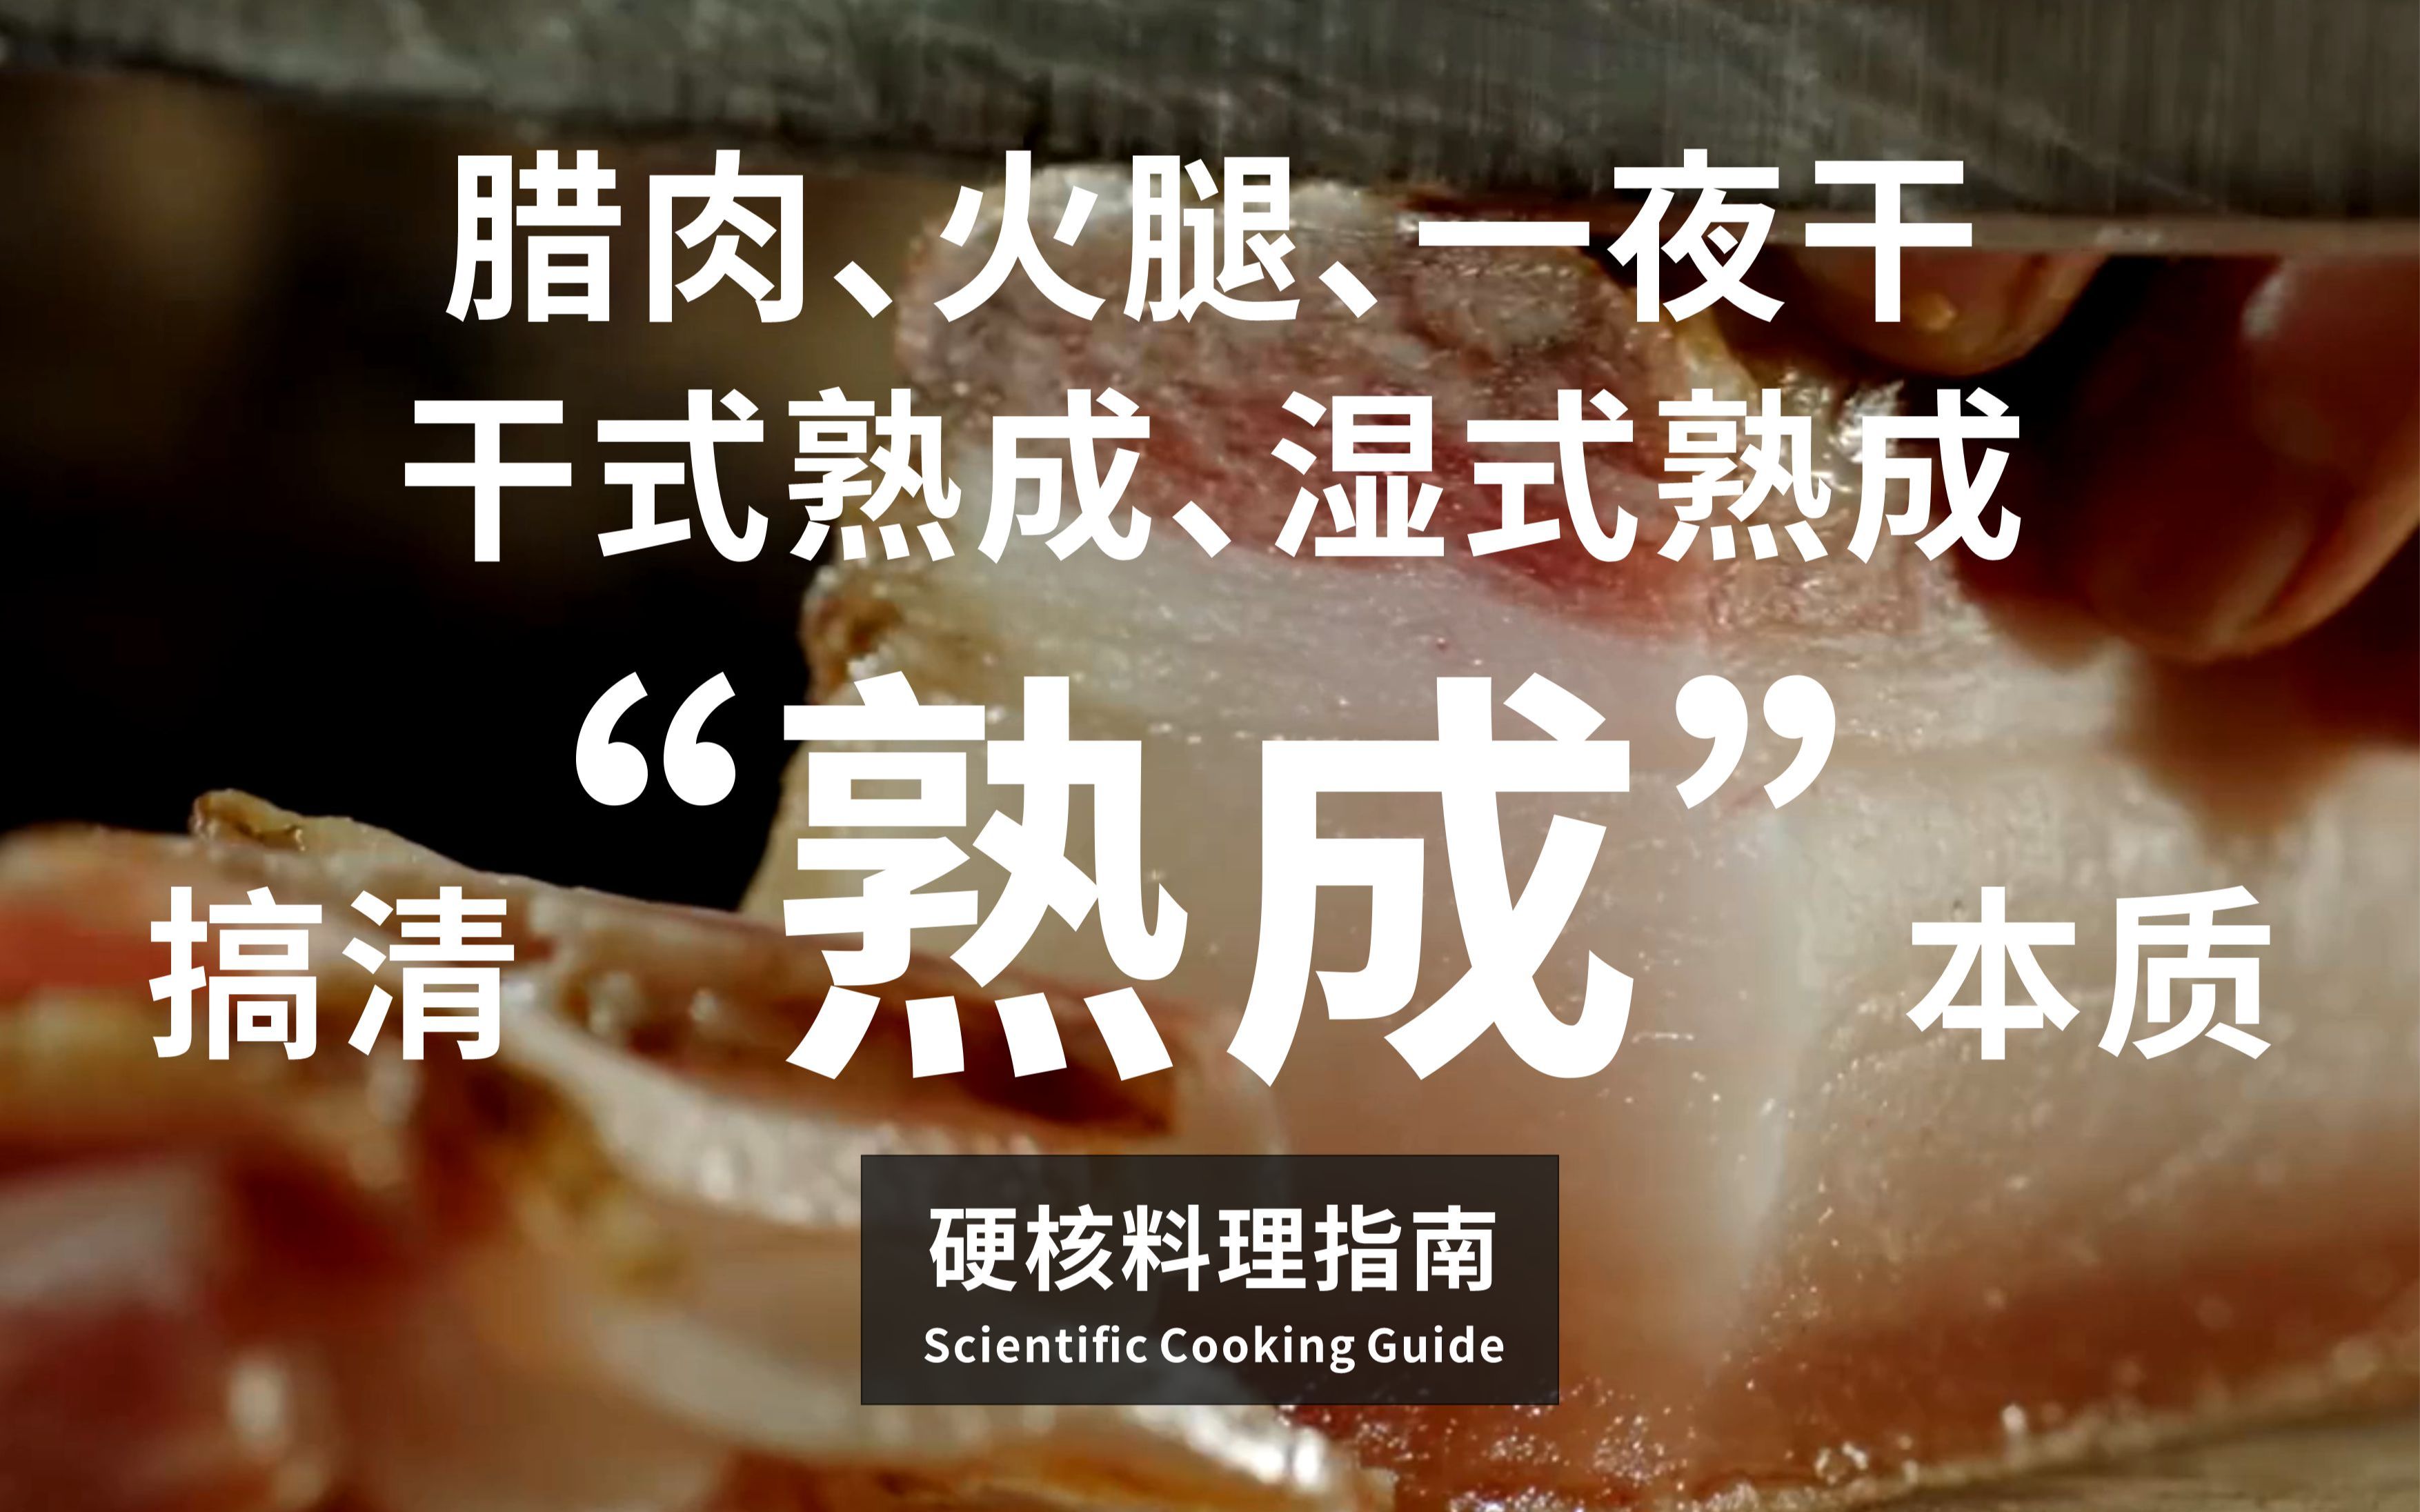 硬核烹饪指南06期：一张图搞清“熟成”的本质，腊肉、火腿、一夜干、干式熟成、湿式熟成全解析